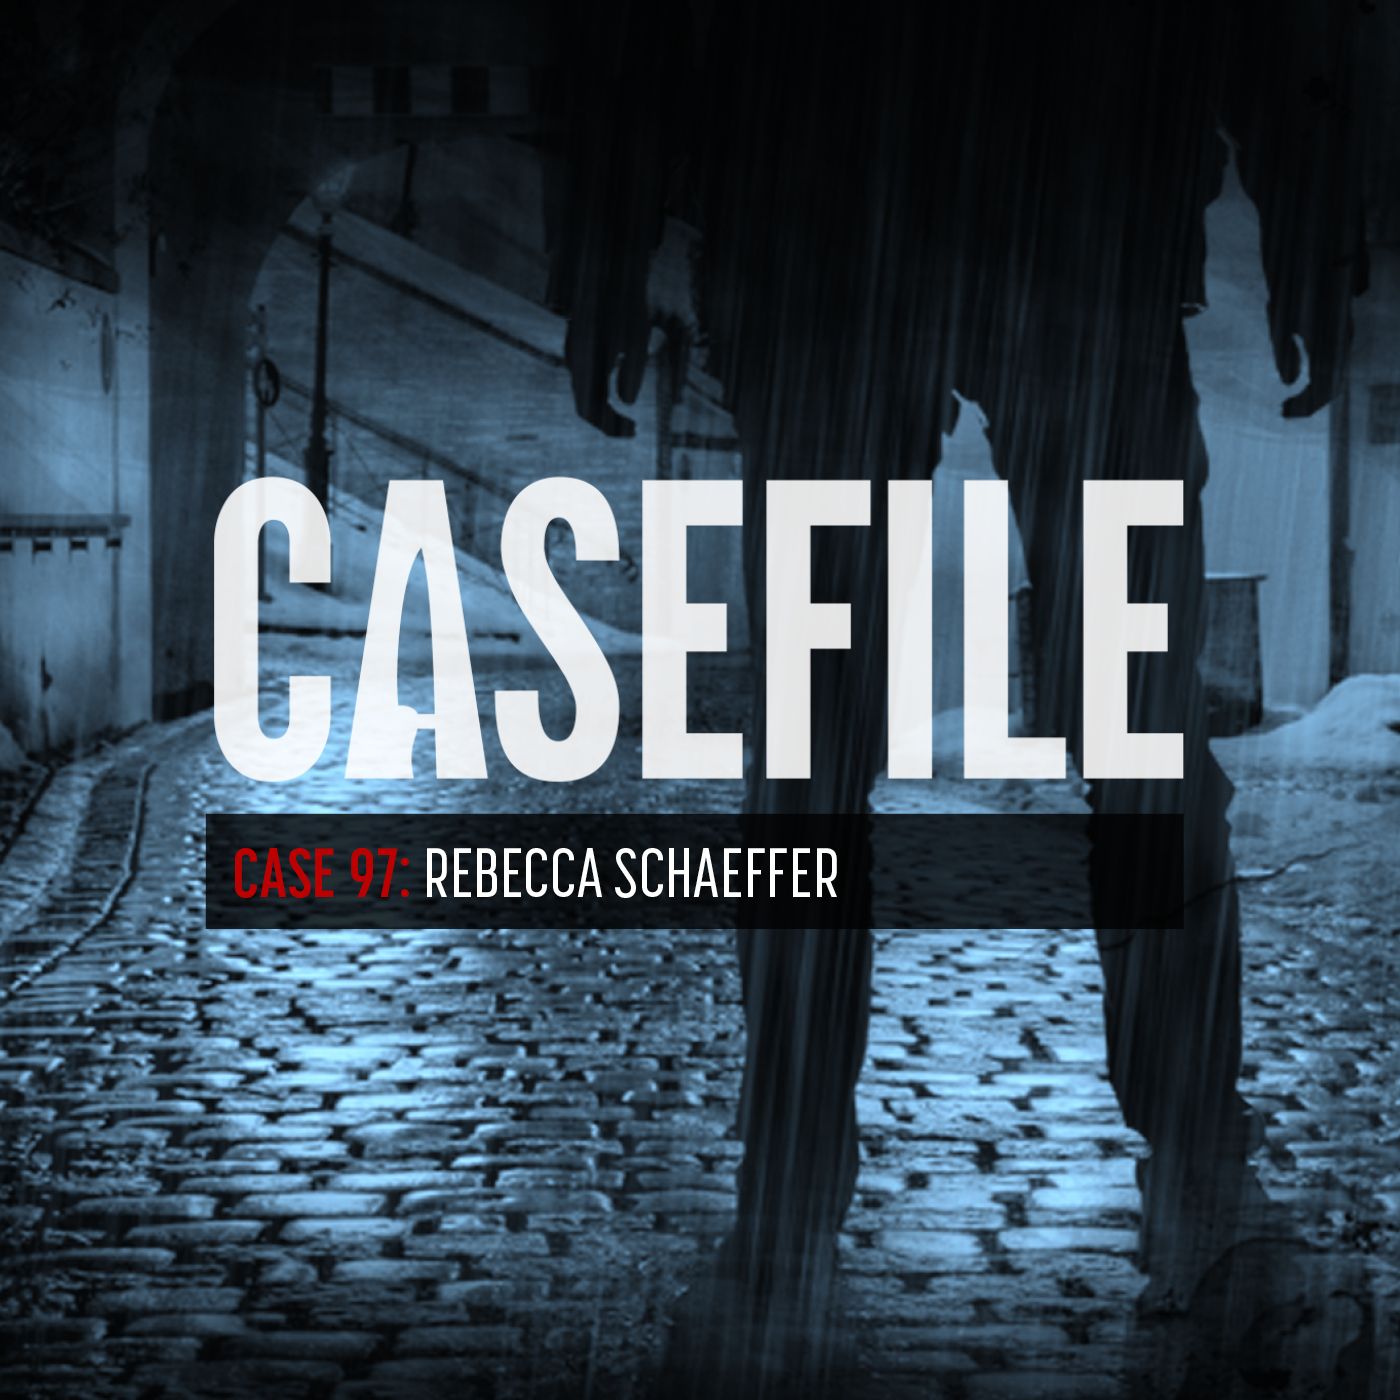 Case 97: Rebecca Schaeffer